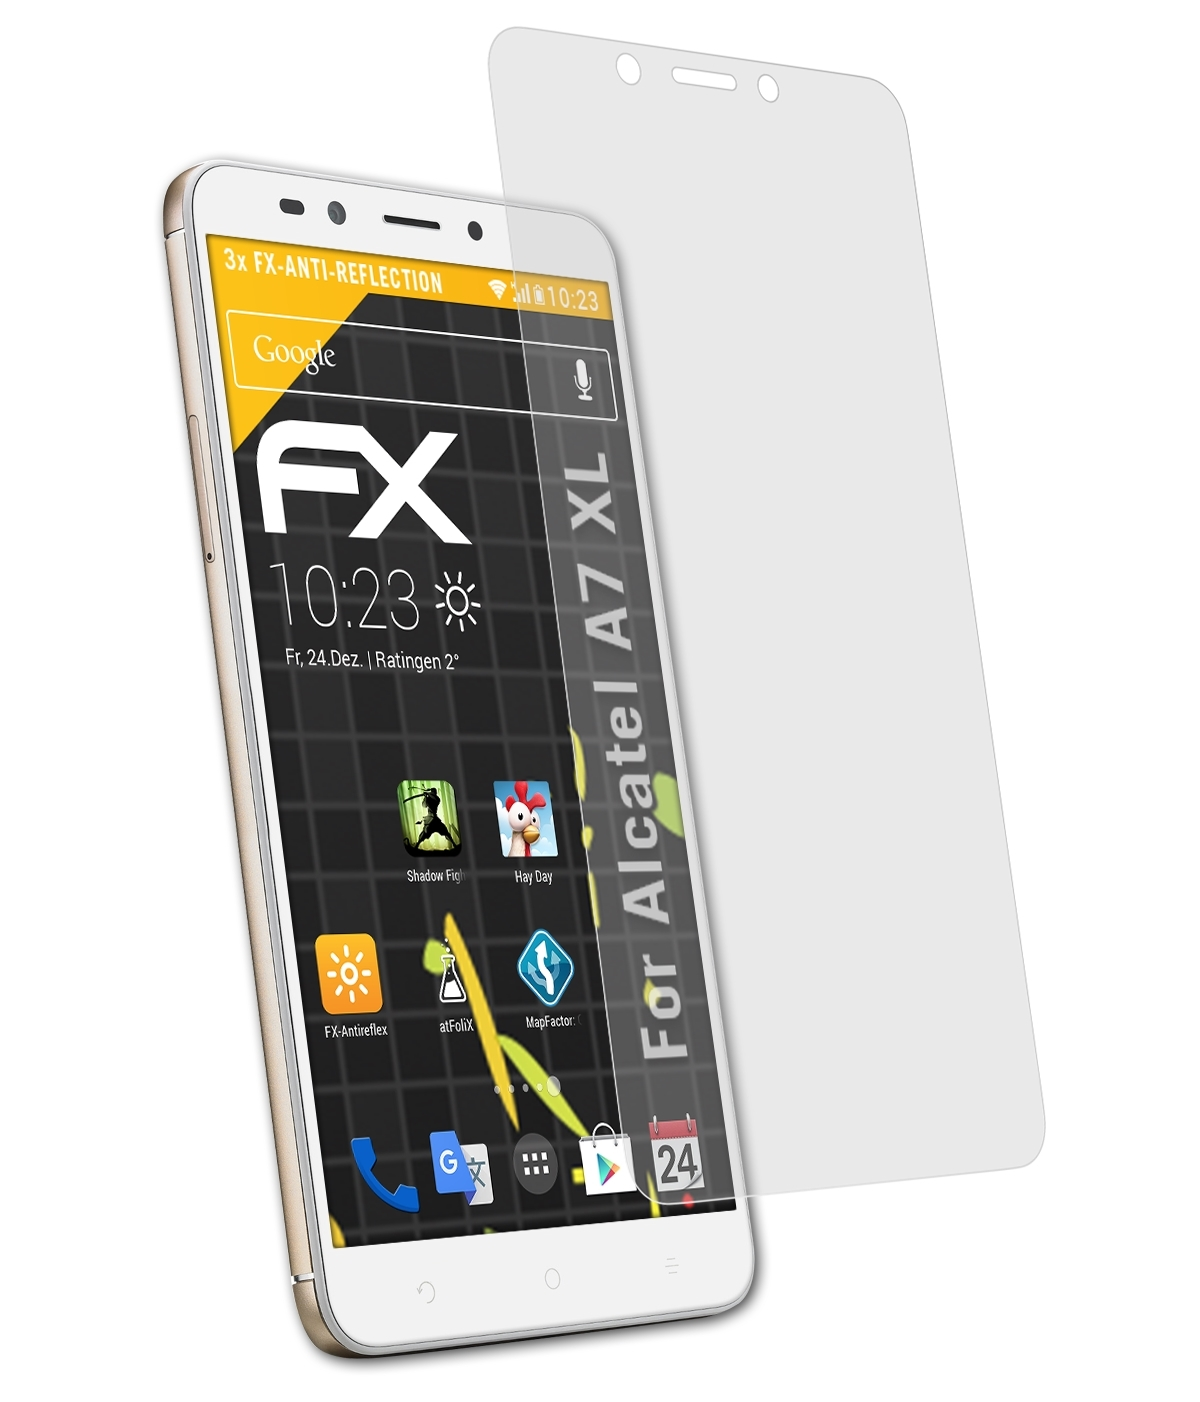 ATFOLIX 3x FX-Antireflex A7 Alcatel Displayschutz(für XL)